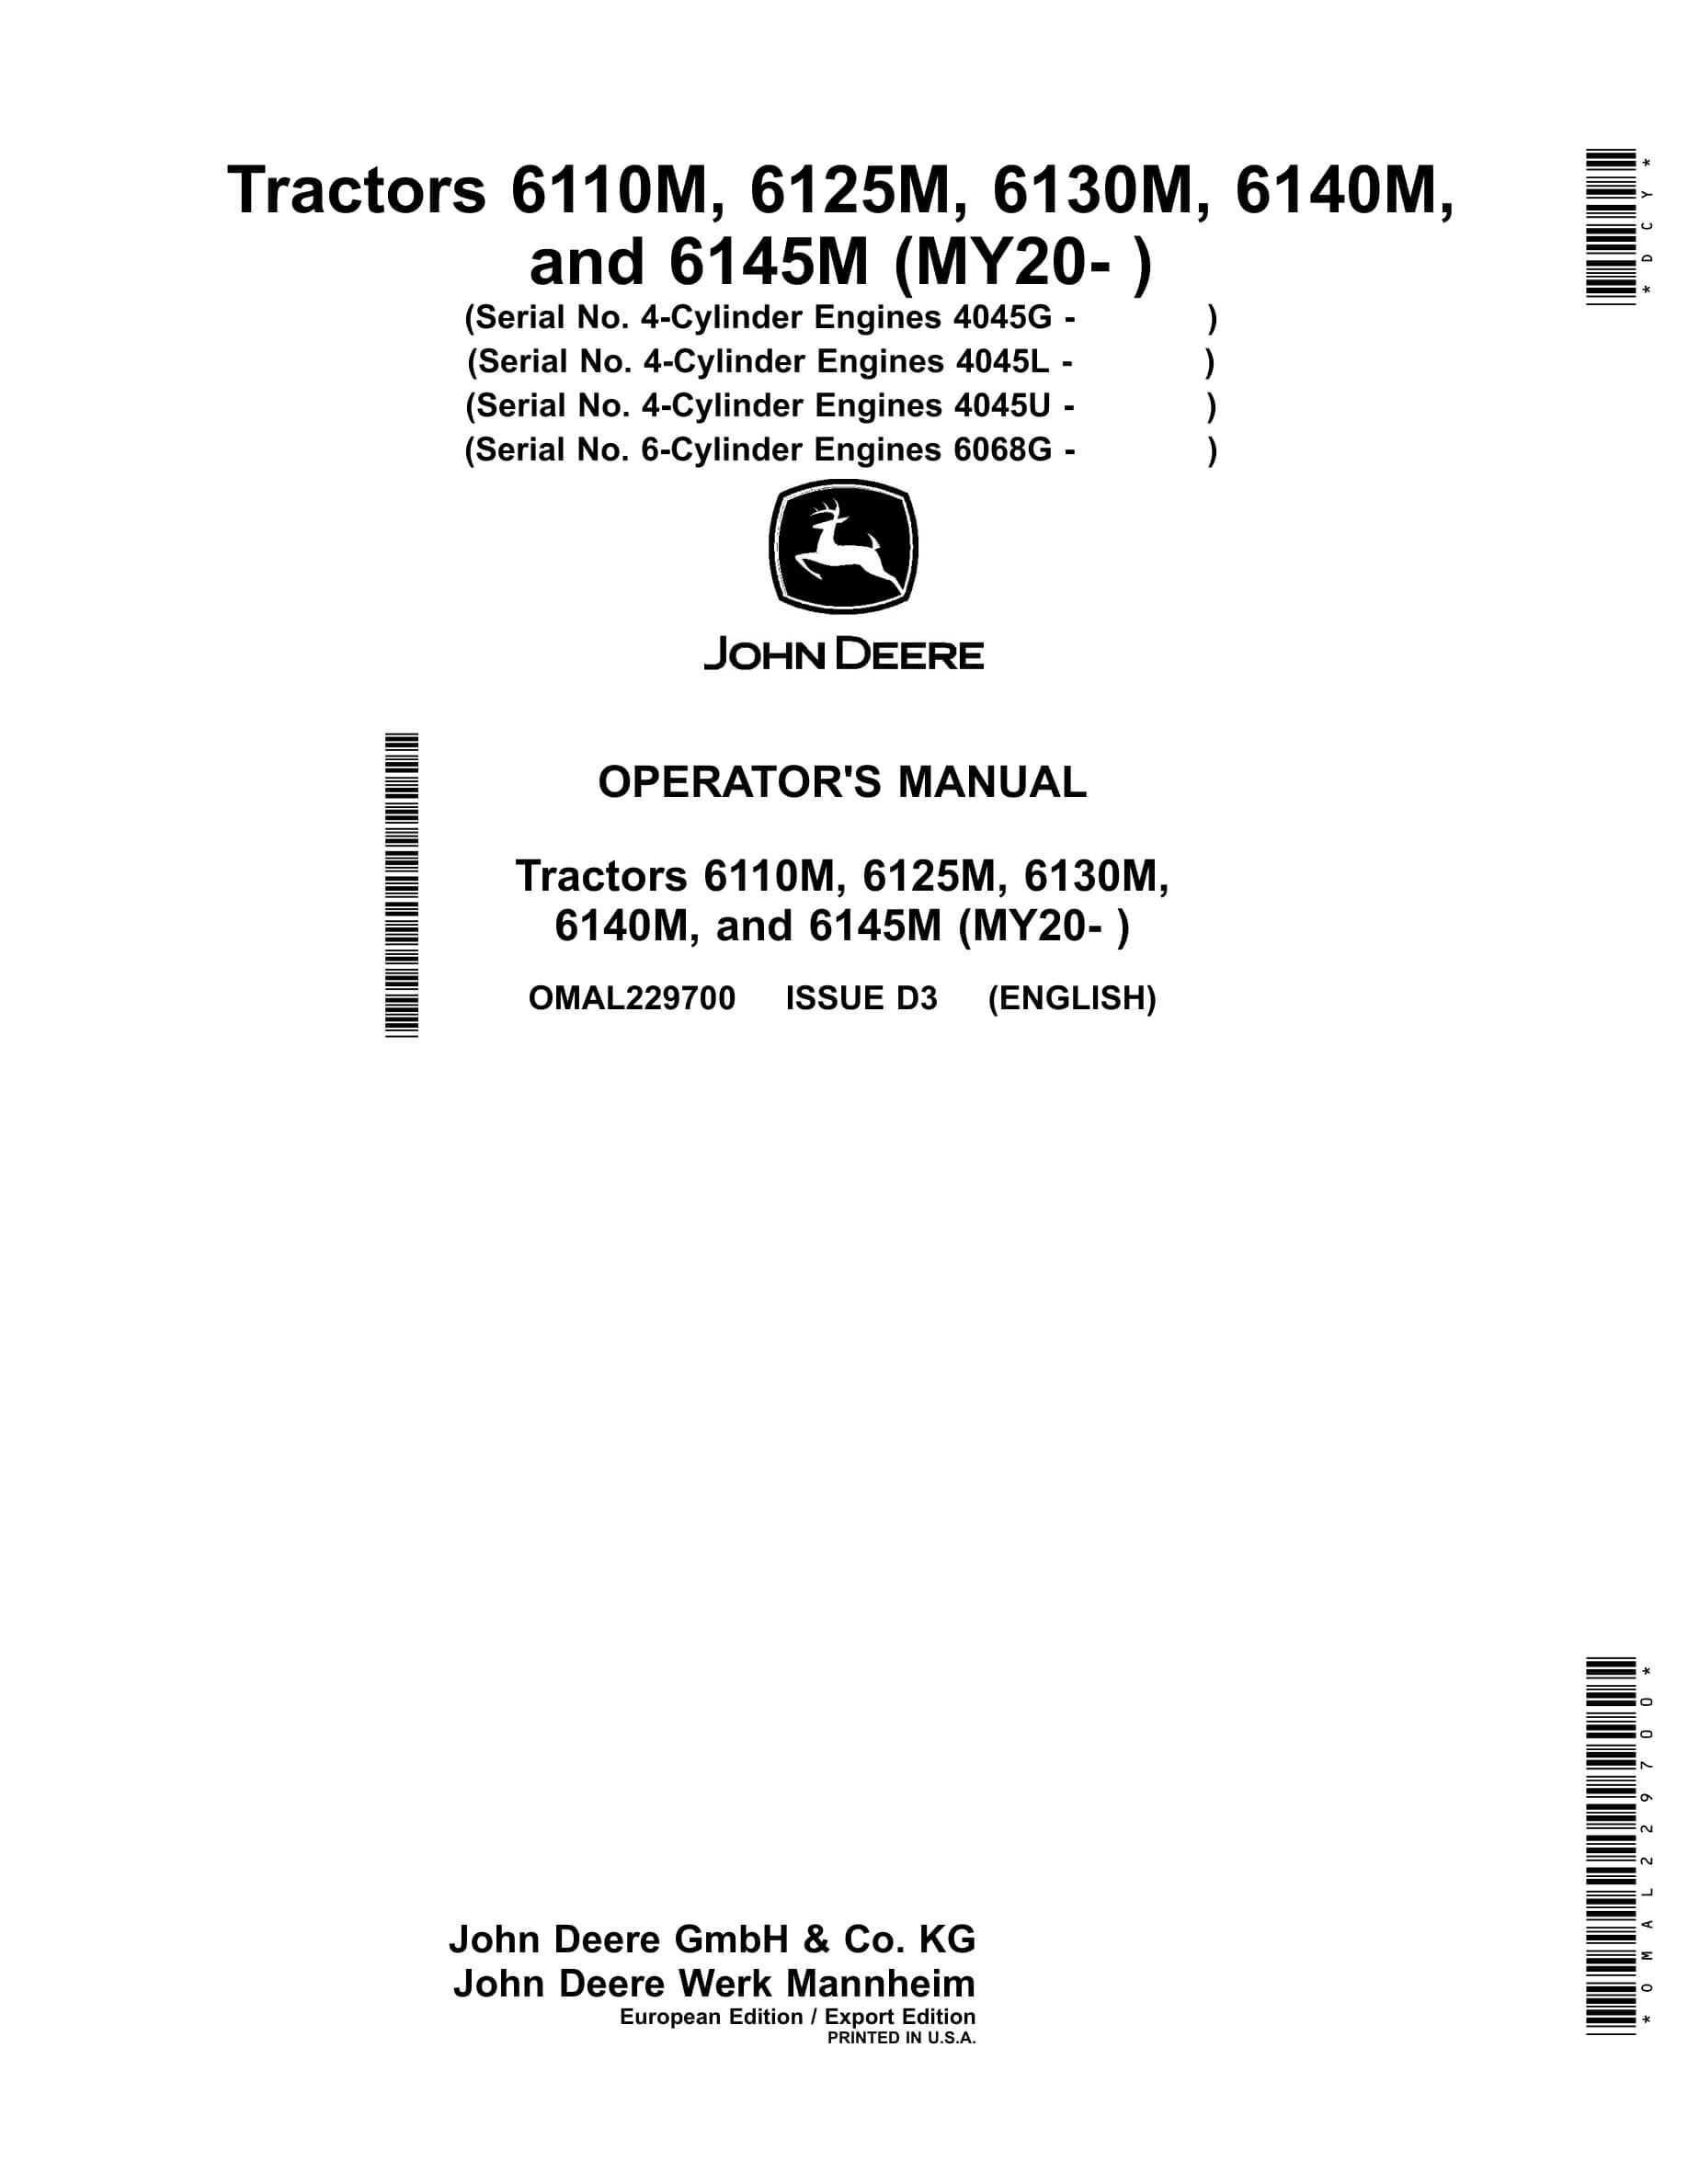 John Deere 6110m, 6125m, 6130m 6140m, And 6145m (my20- ) Tractors Operator Manuals OMAL229700-1